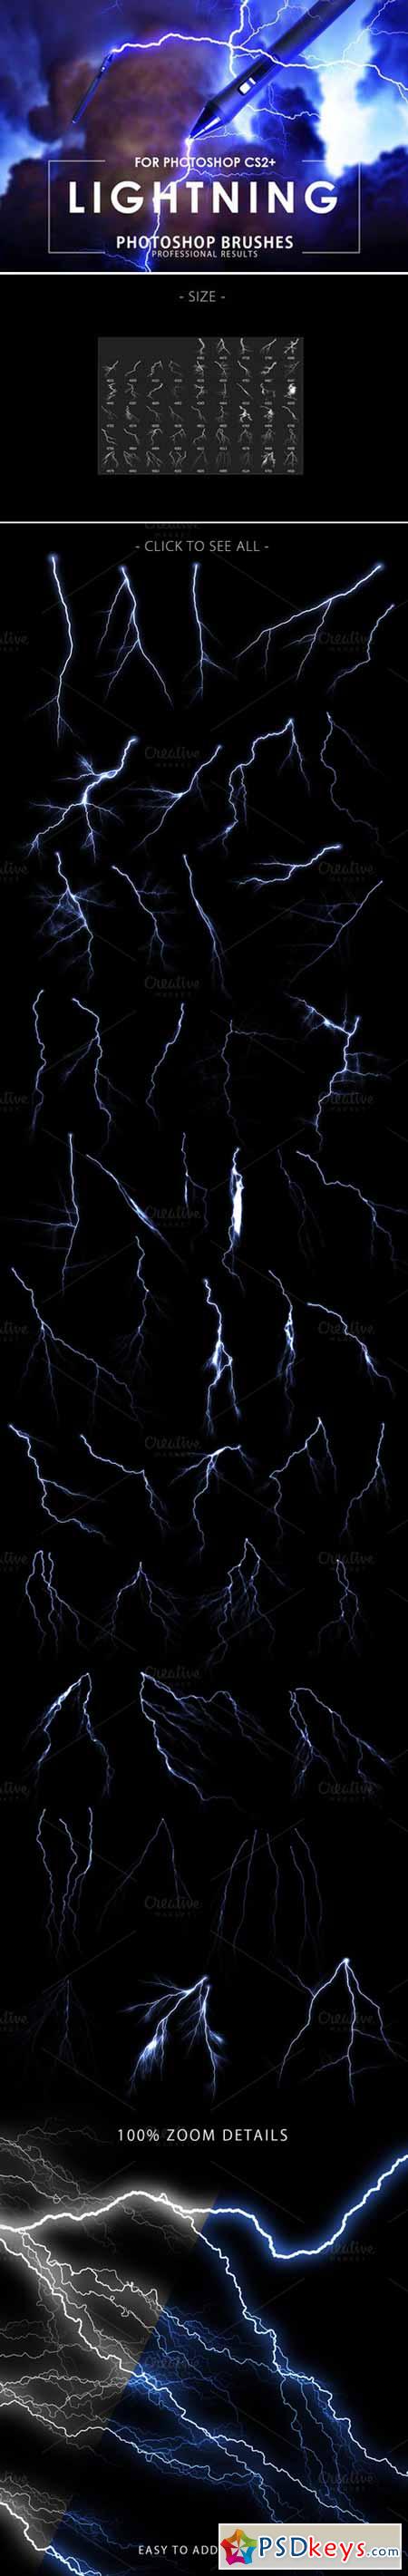 Lightning Photoshop Brushes 437546